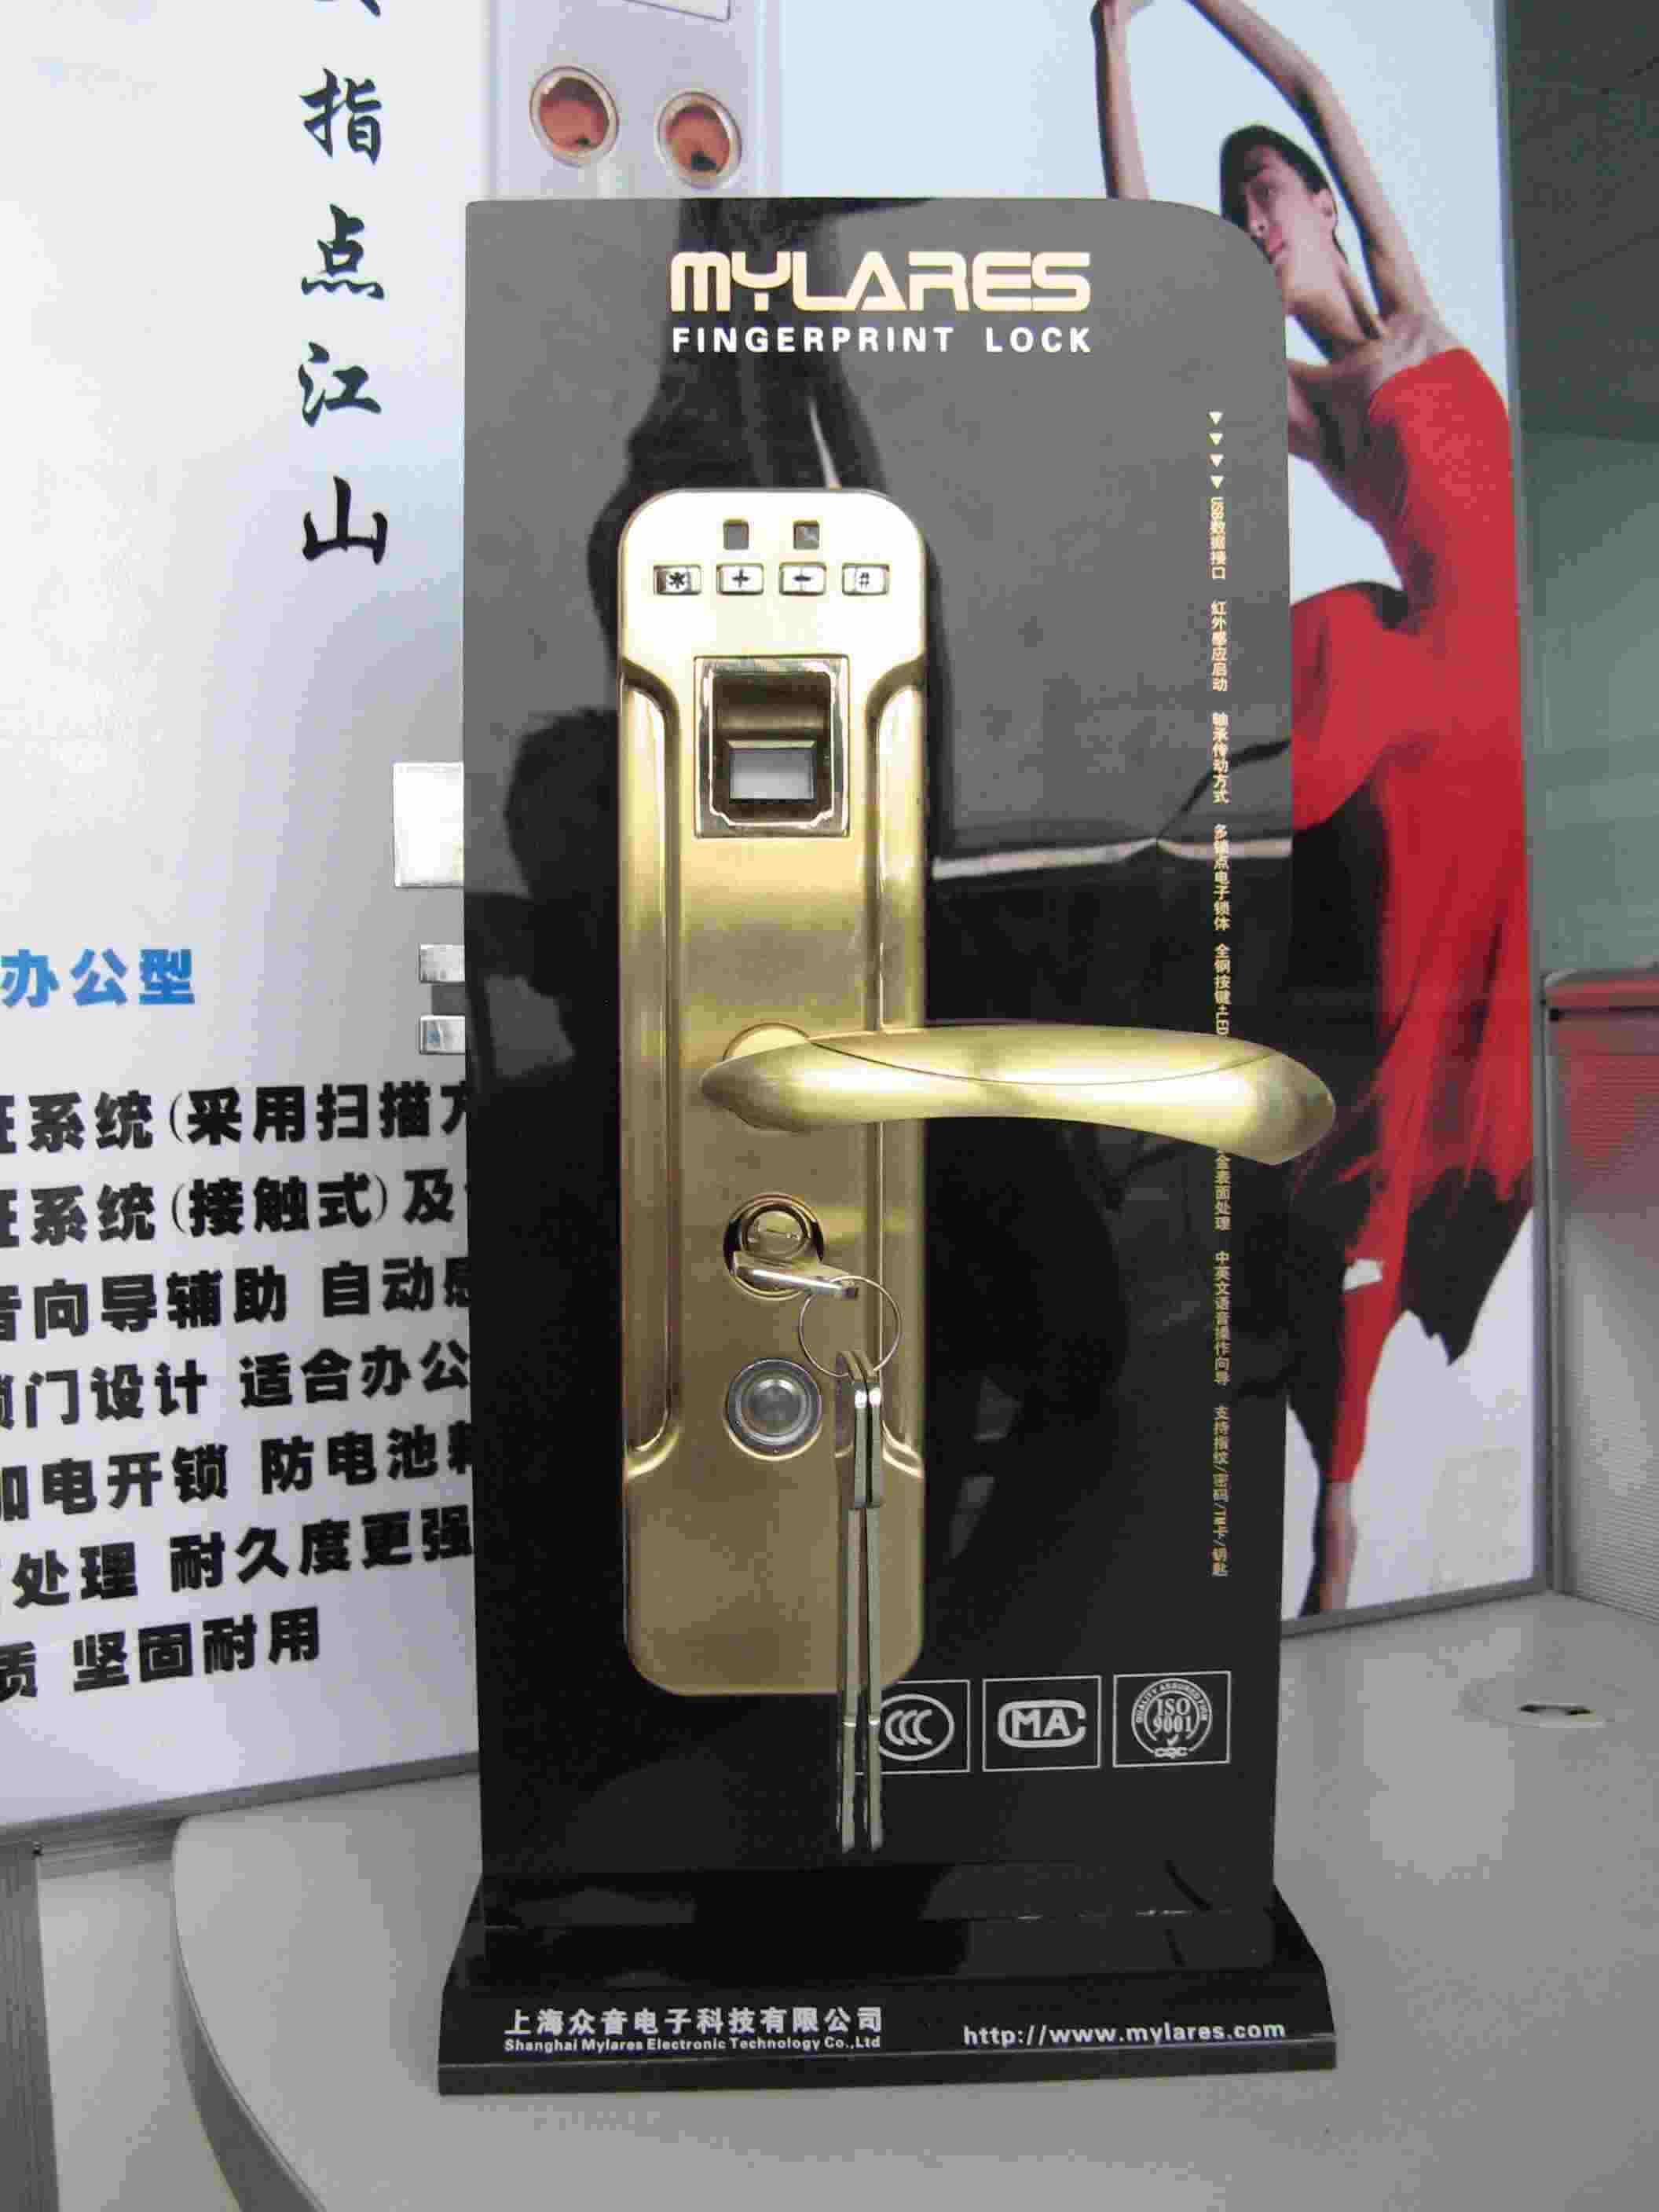 供应ML105型淡金色指纹密码锁